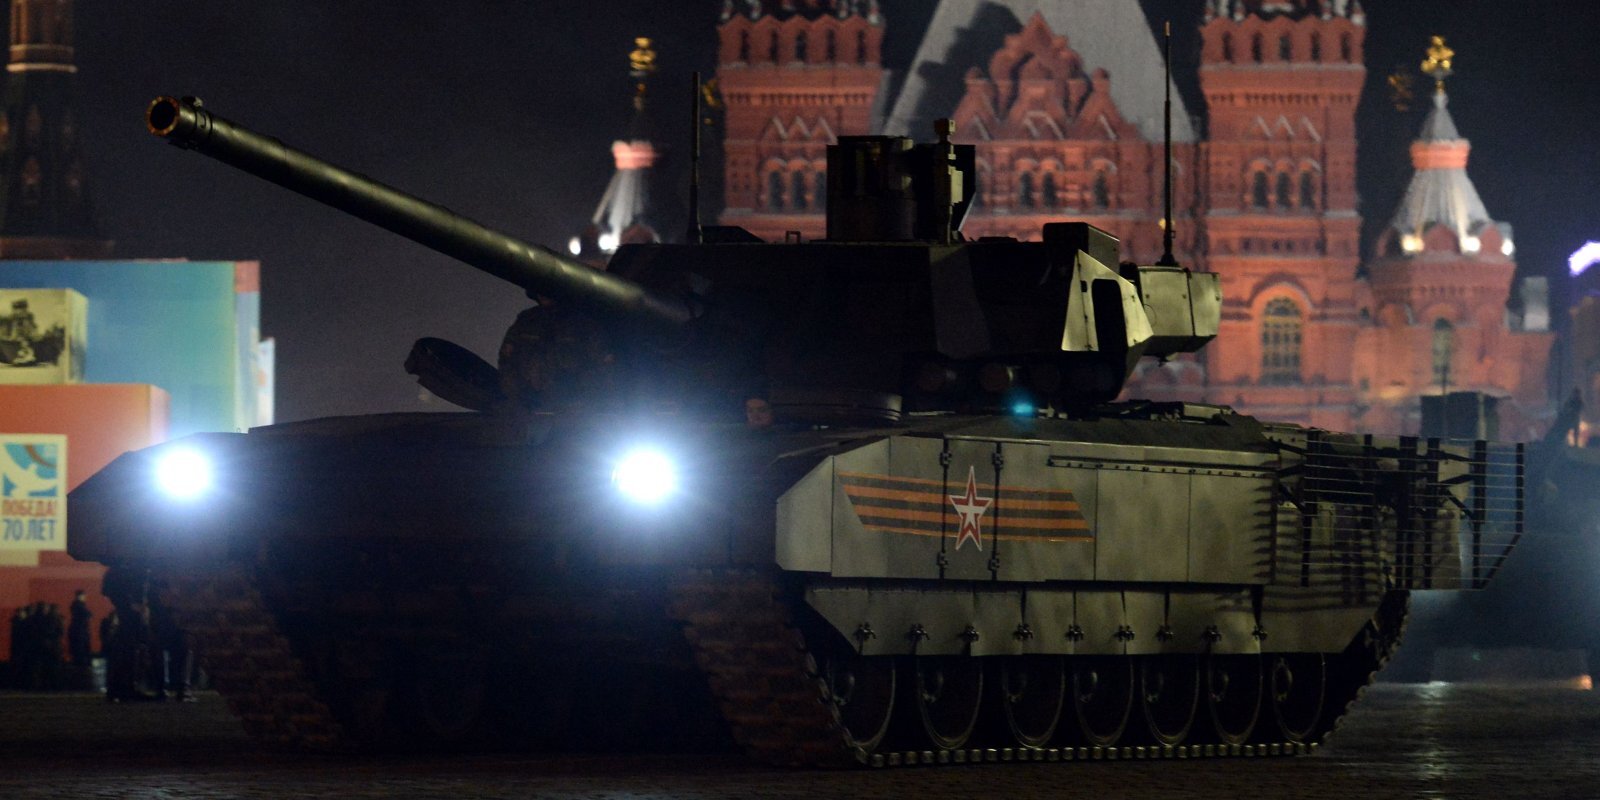 Vai izmēģinājumos Sīrijā iznīcināts krievu jaunais supertanks 'Armata'?